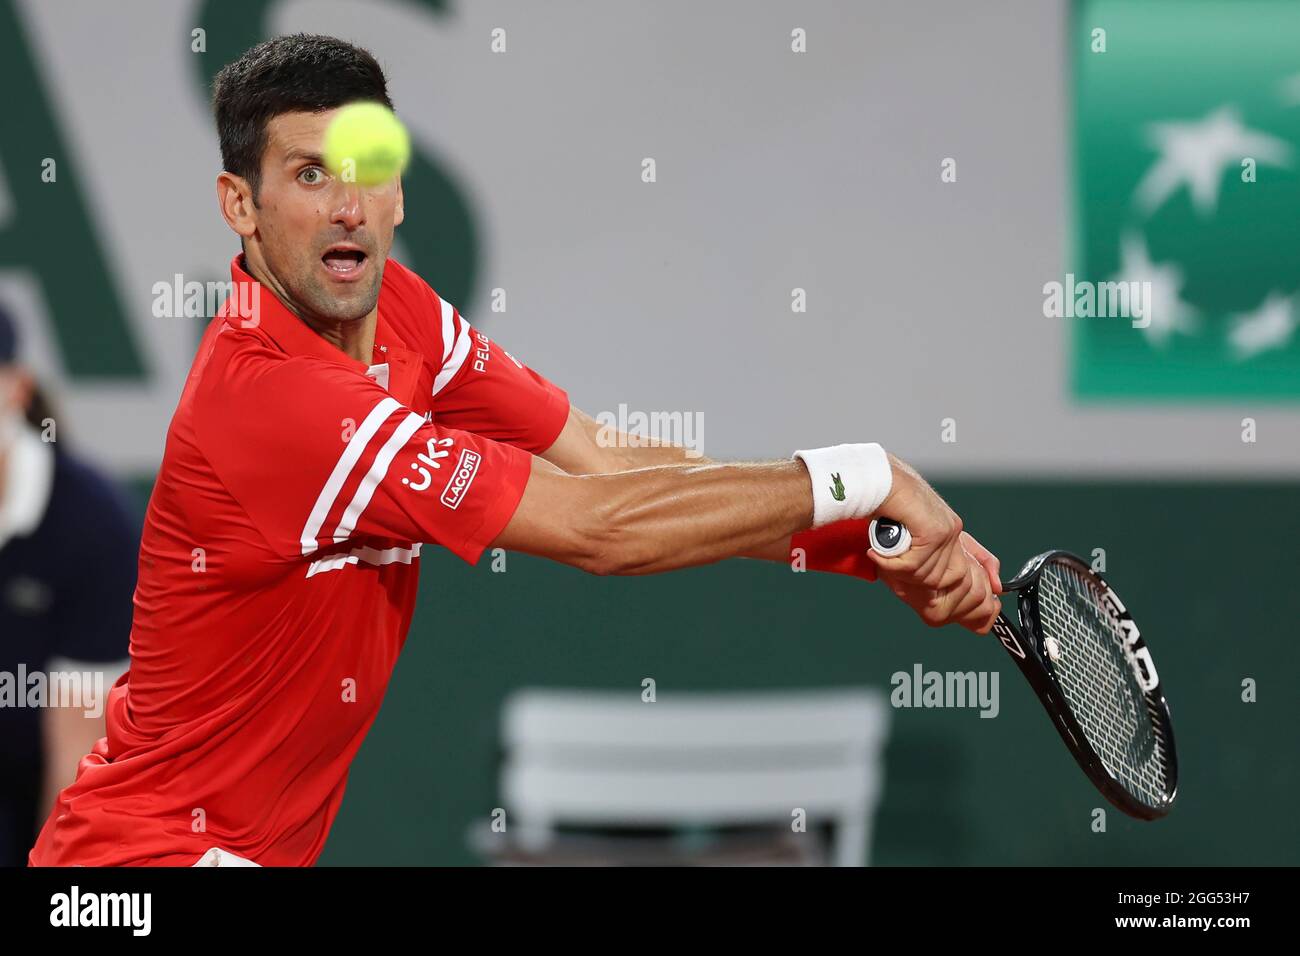 Joueur serbe de tennis Novak Djokovic (SRB) jouant un coup de dos, tournoi de  tennis de l'Open de France 2021, Paris, France Photo Stock - Alamy